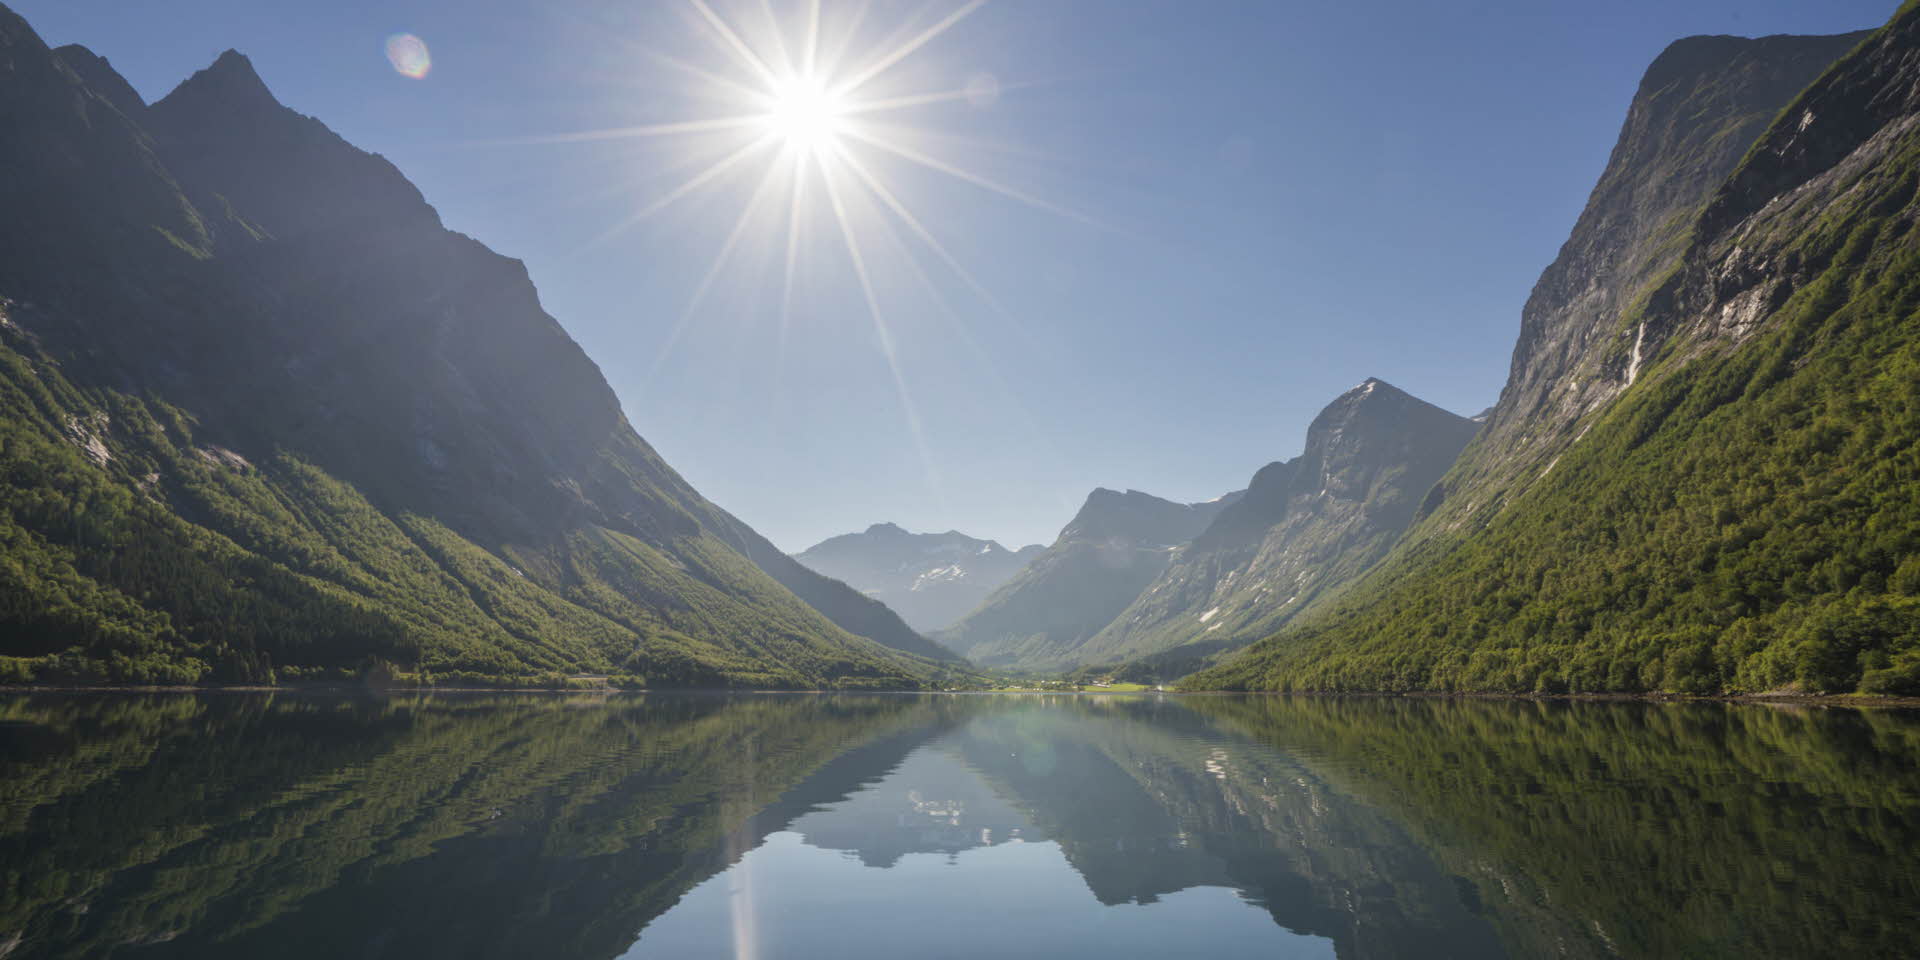 日の光がまぶしい夏の日、なだらかなヨルンフィヨルド (Hjorndfjord)を航海するときの息をのむような静けさ